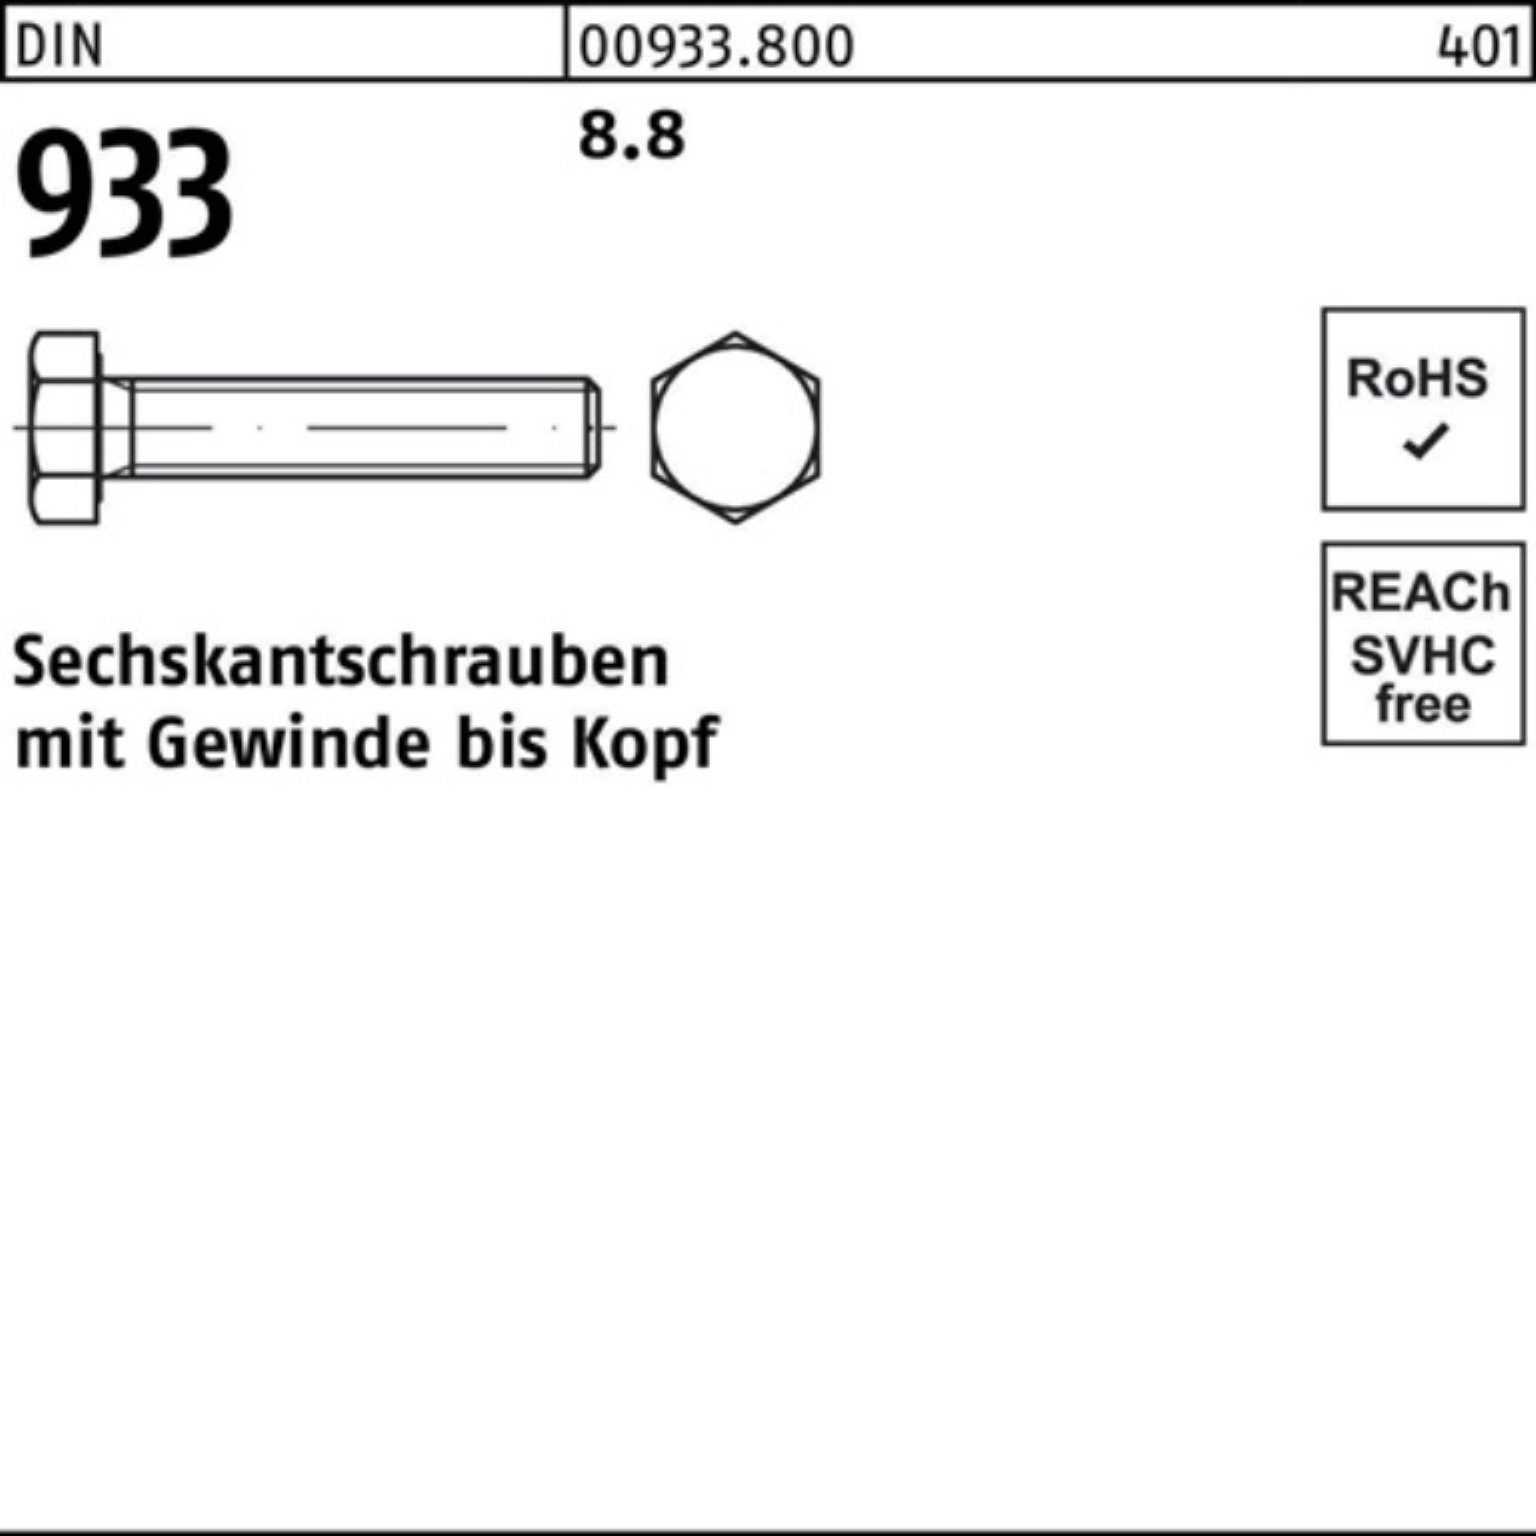 M42x 100er Sechskantschraube DIN 8.8 70 Sechskantschraube DIN Pack 1 Reyher 933 8 VG 933 Stück